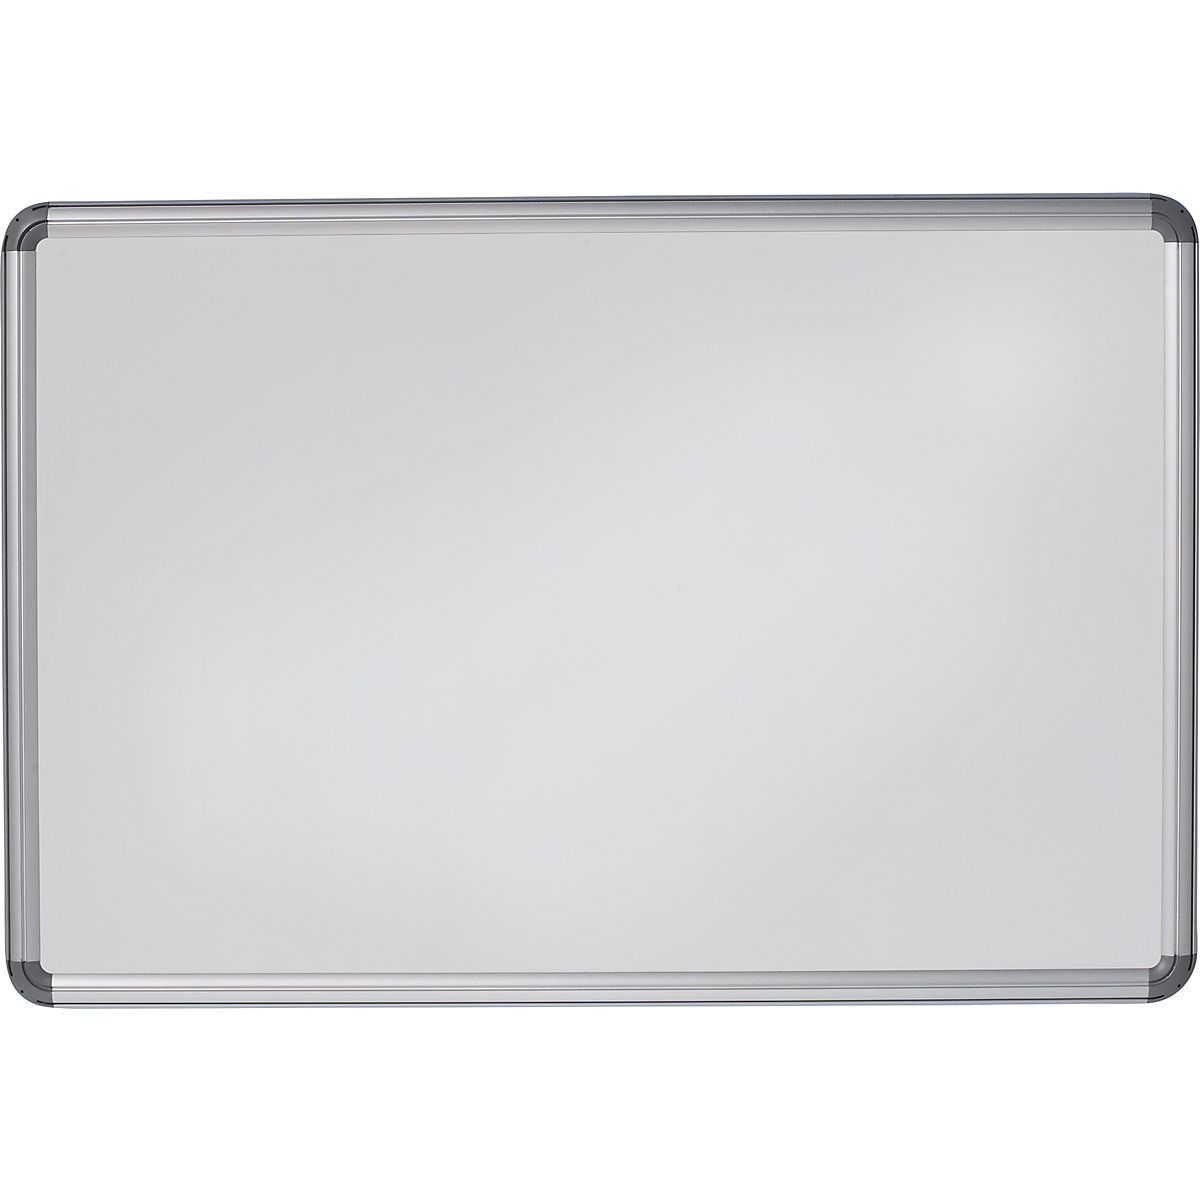 Elegantní nástěnná tabule – eurokraft pro, ocelový plech, lakováno, š x v 1800 x 1200 mm, bílá